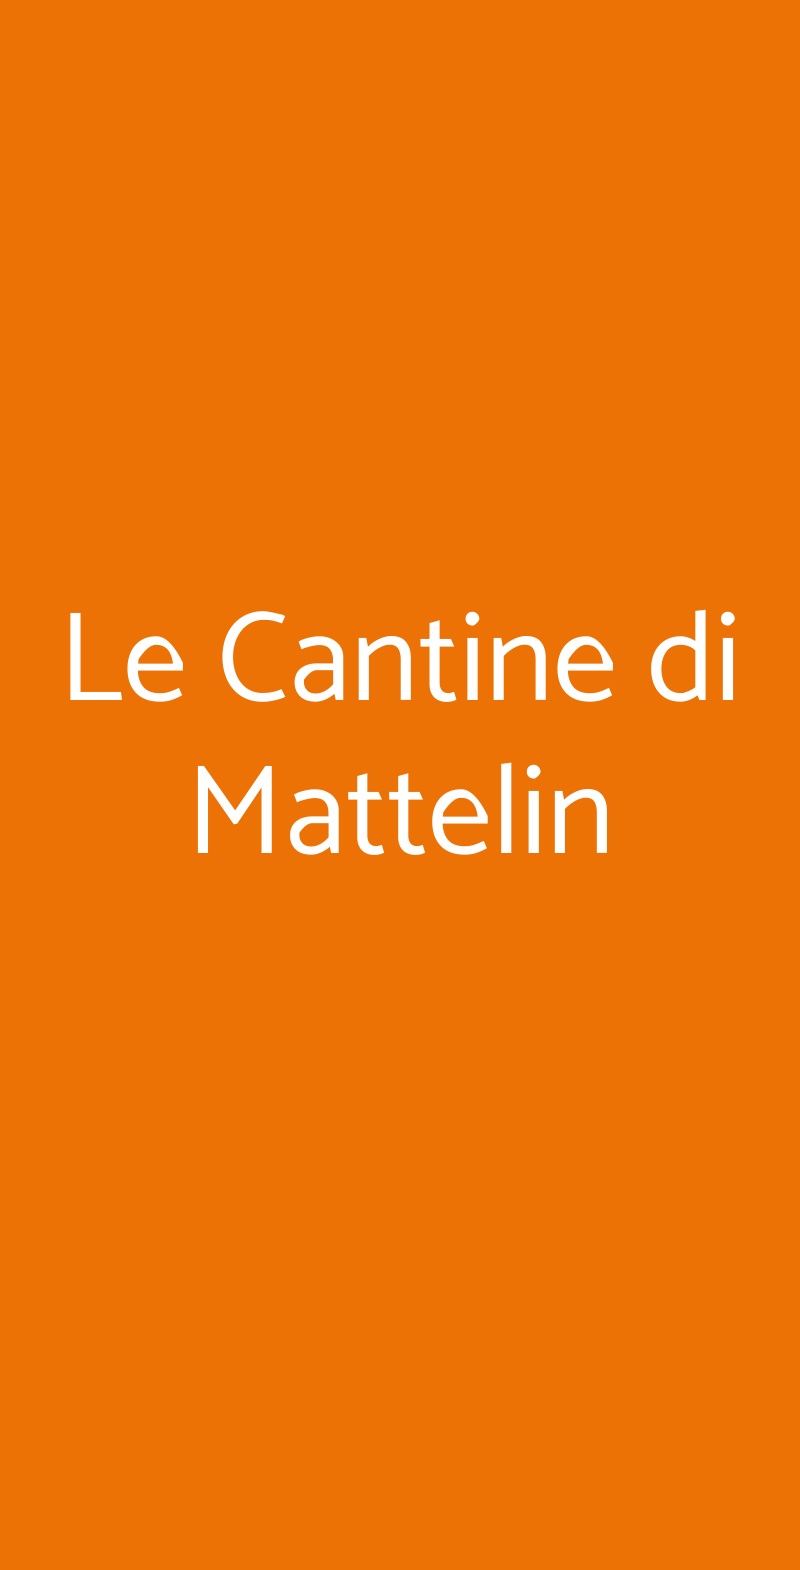 Le Cantine di Mattelin Genova menù 1 pagina